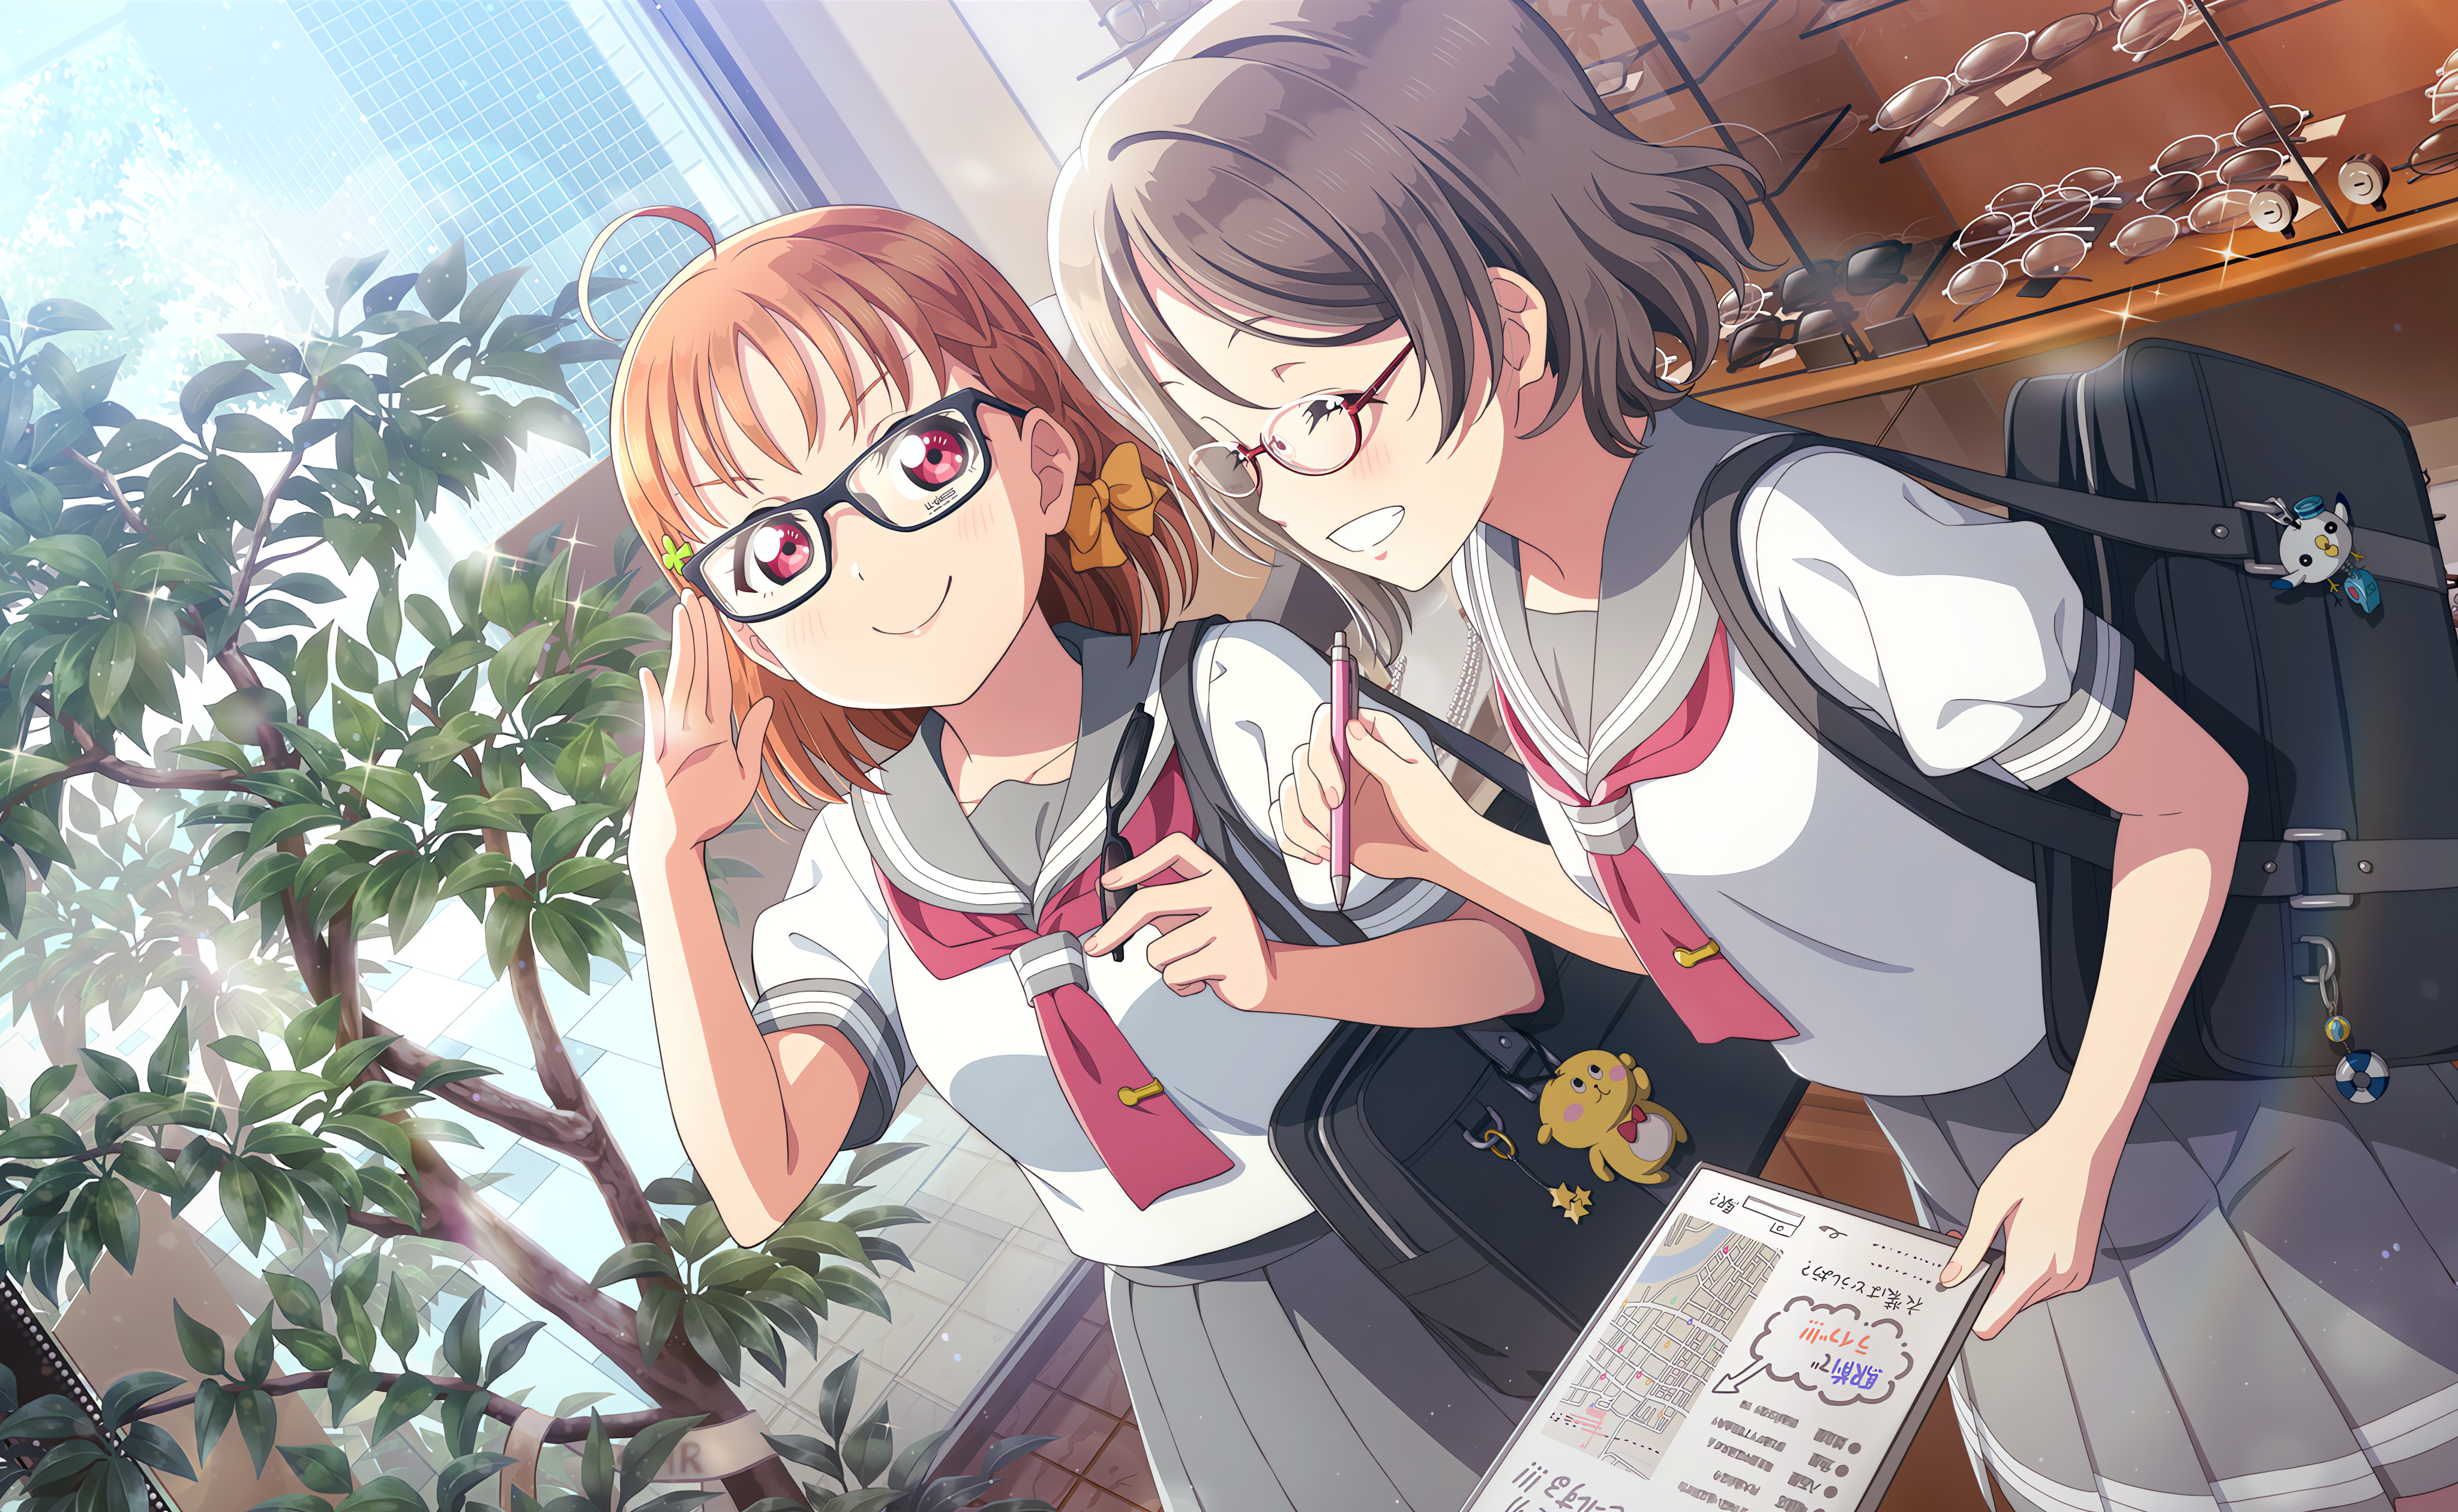 Takami Chika Love Live Love Live Sunshine Anime Anime Girls Glasses Smiling Leaves Stars Schoolgirl  4096x2520